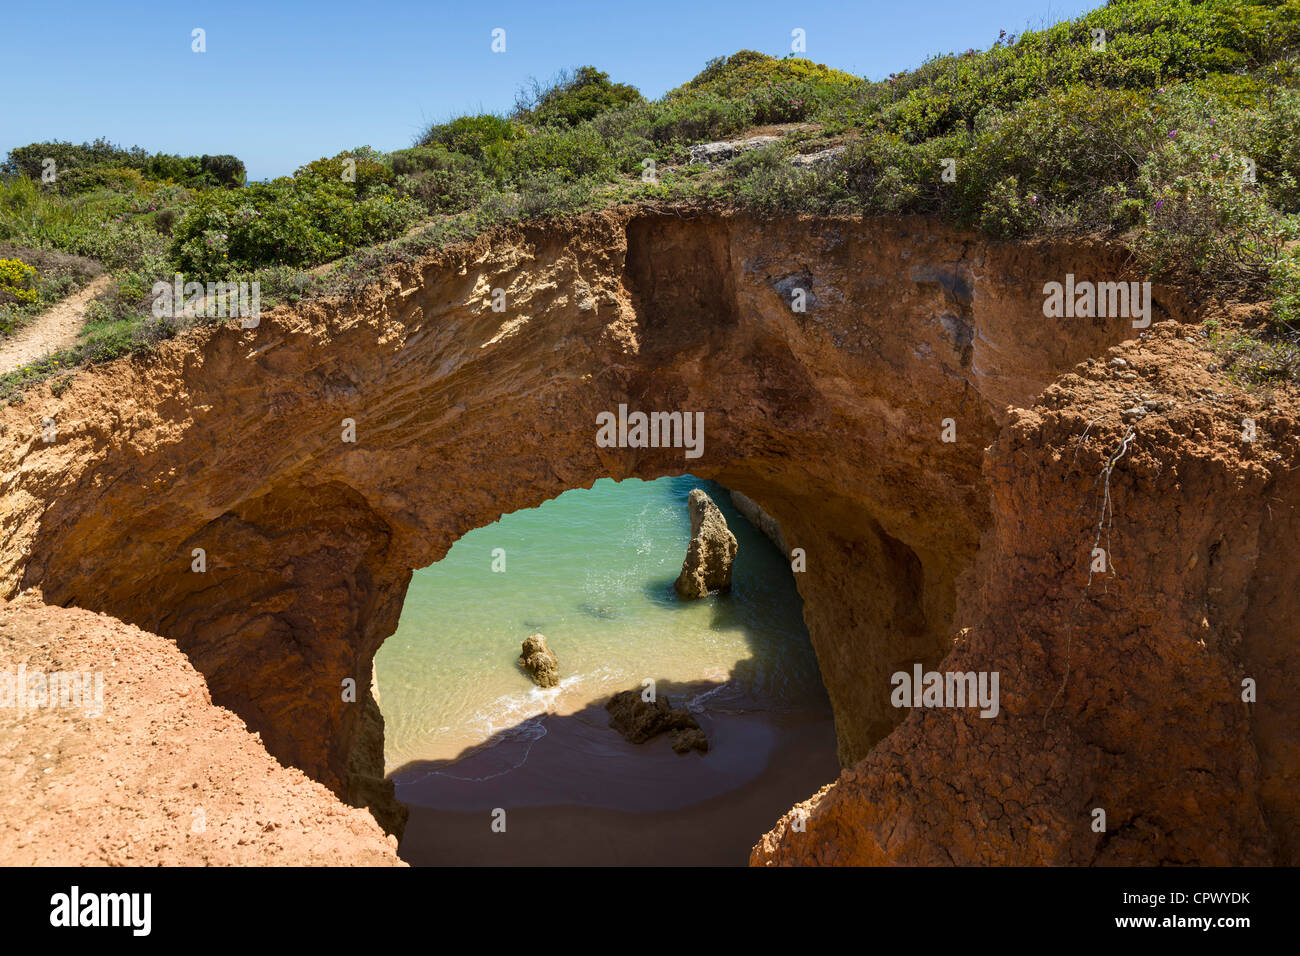 Spiaggia di Praia do Vau, vicino a Portimao Algarve Foto Stock